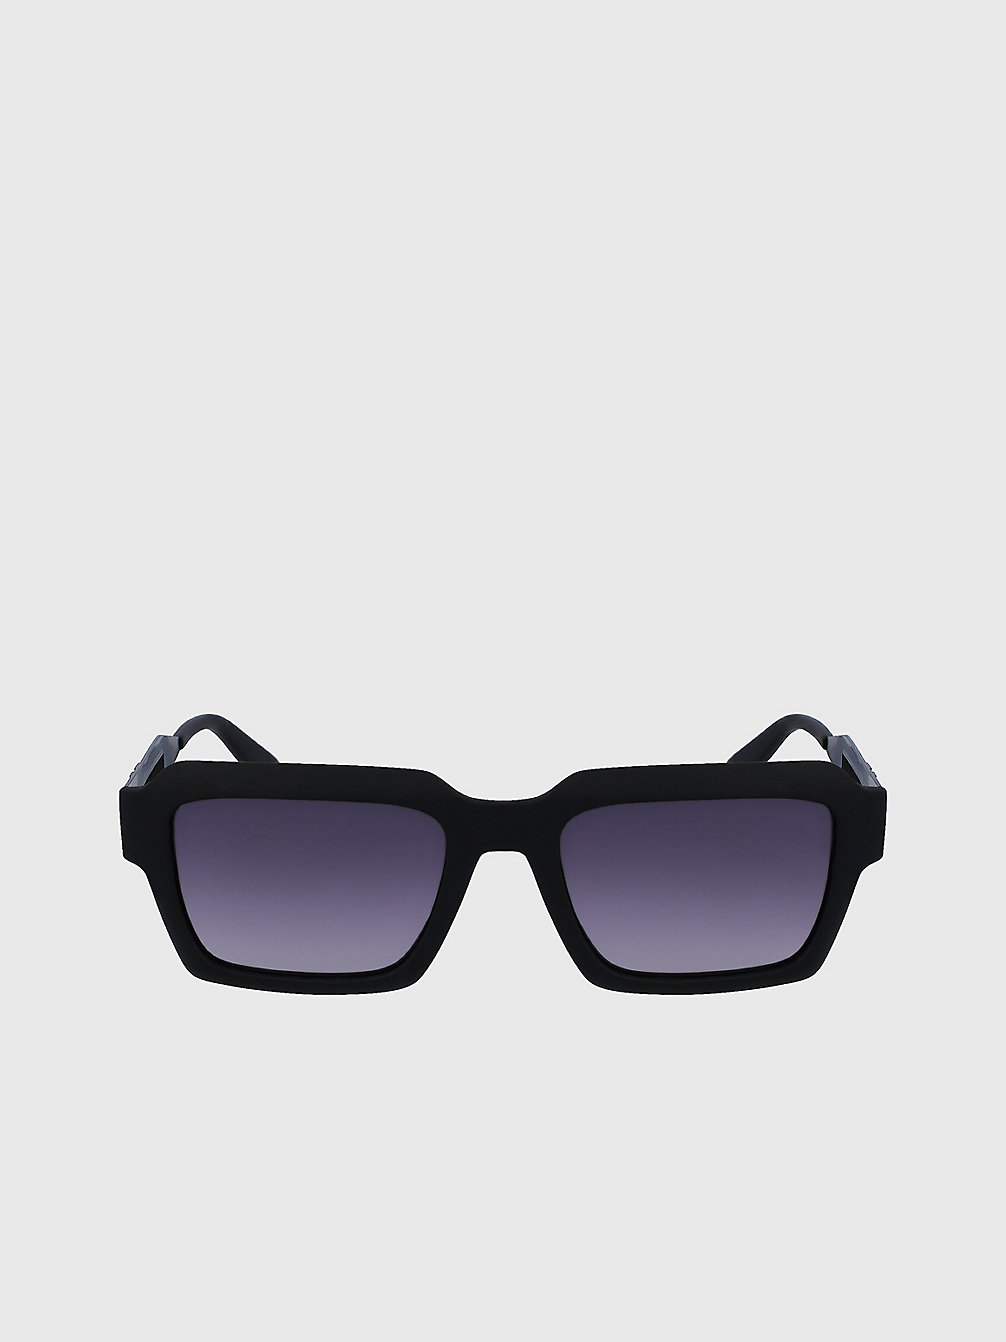 MATTE BLACK > Rechteckige Sonnenbrille Ckj23604s > undefined Herren - Calvin Klein